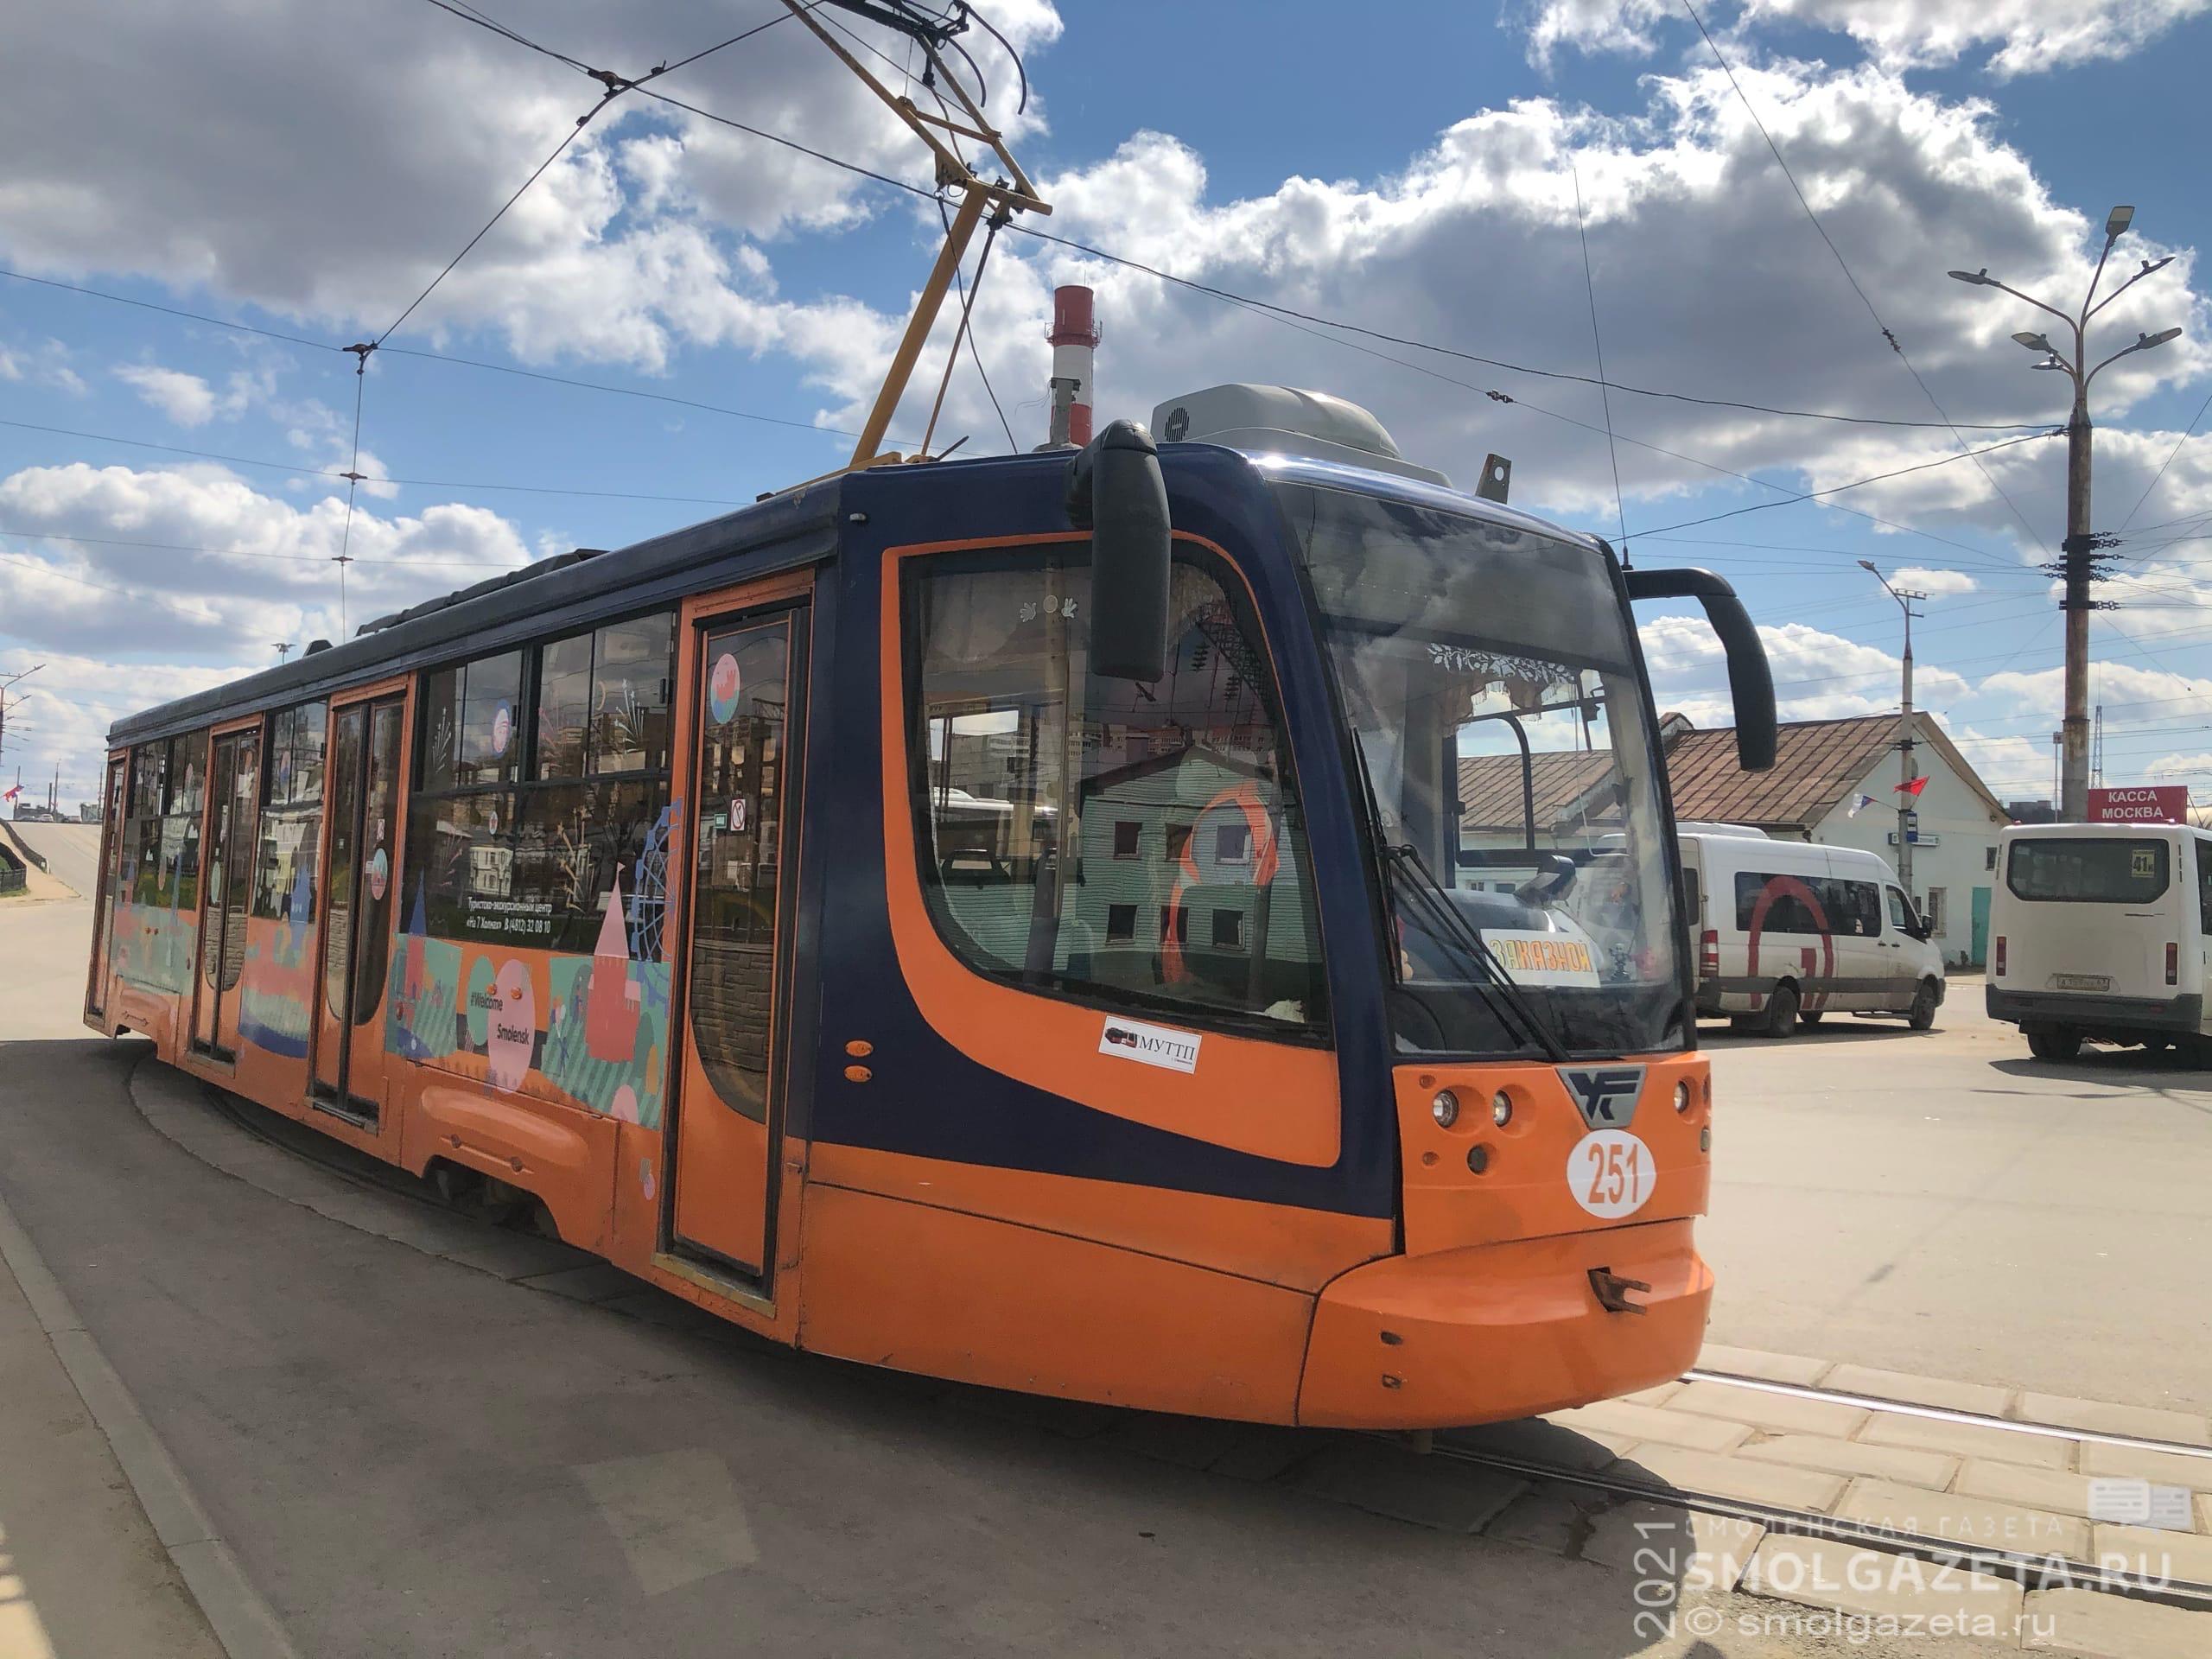 Жители Смоленска оценили работу общественного транспорта